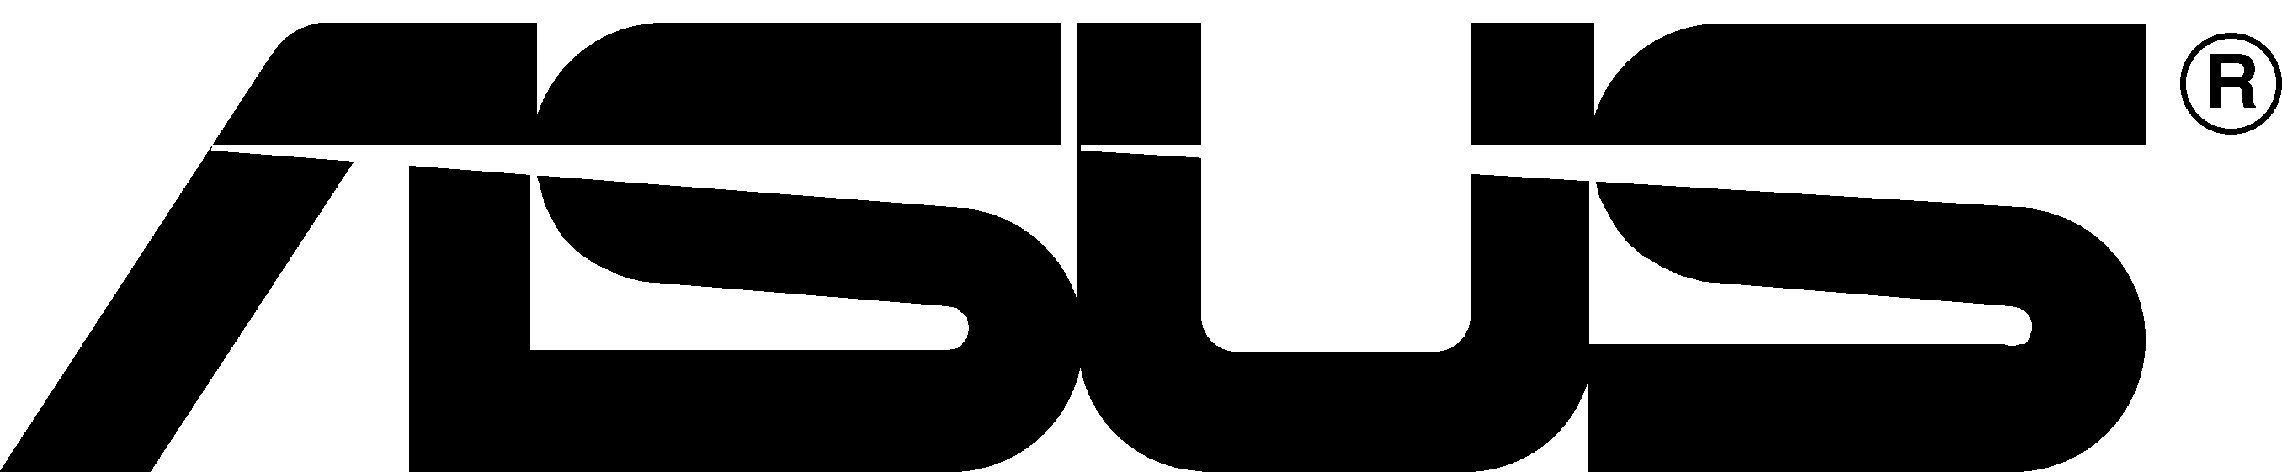 Asus Logo - Asus logo